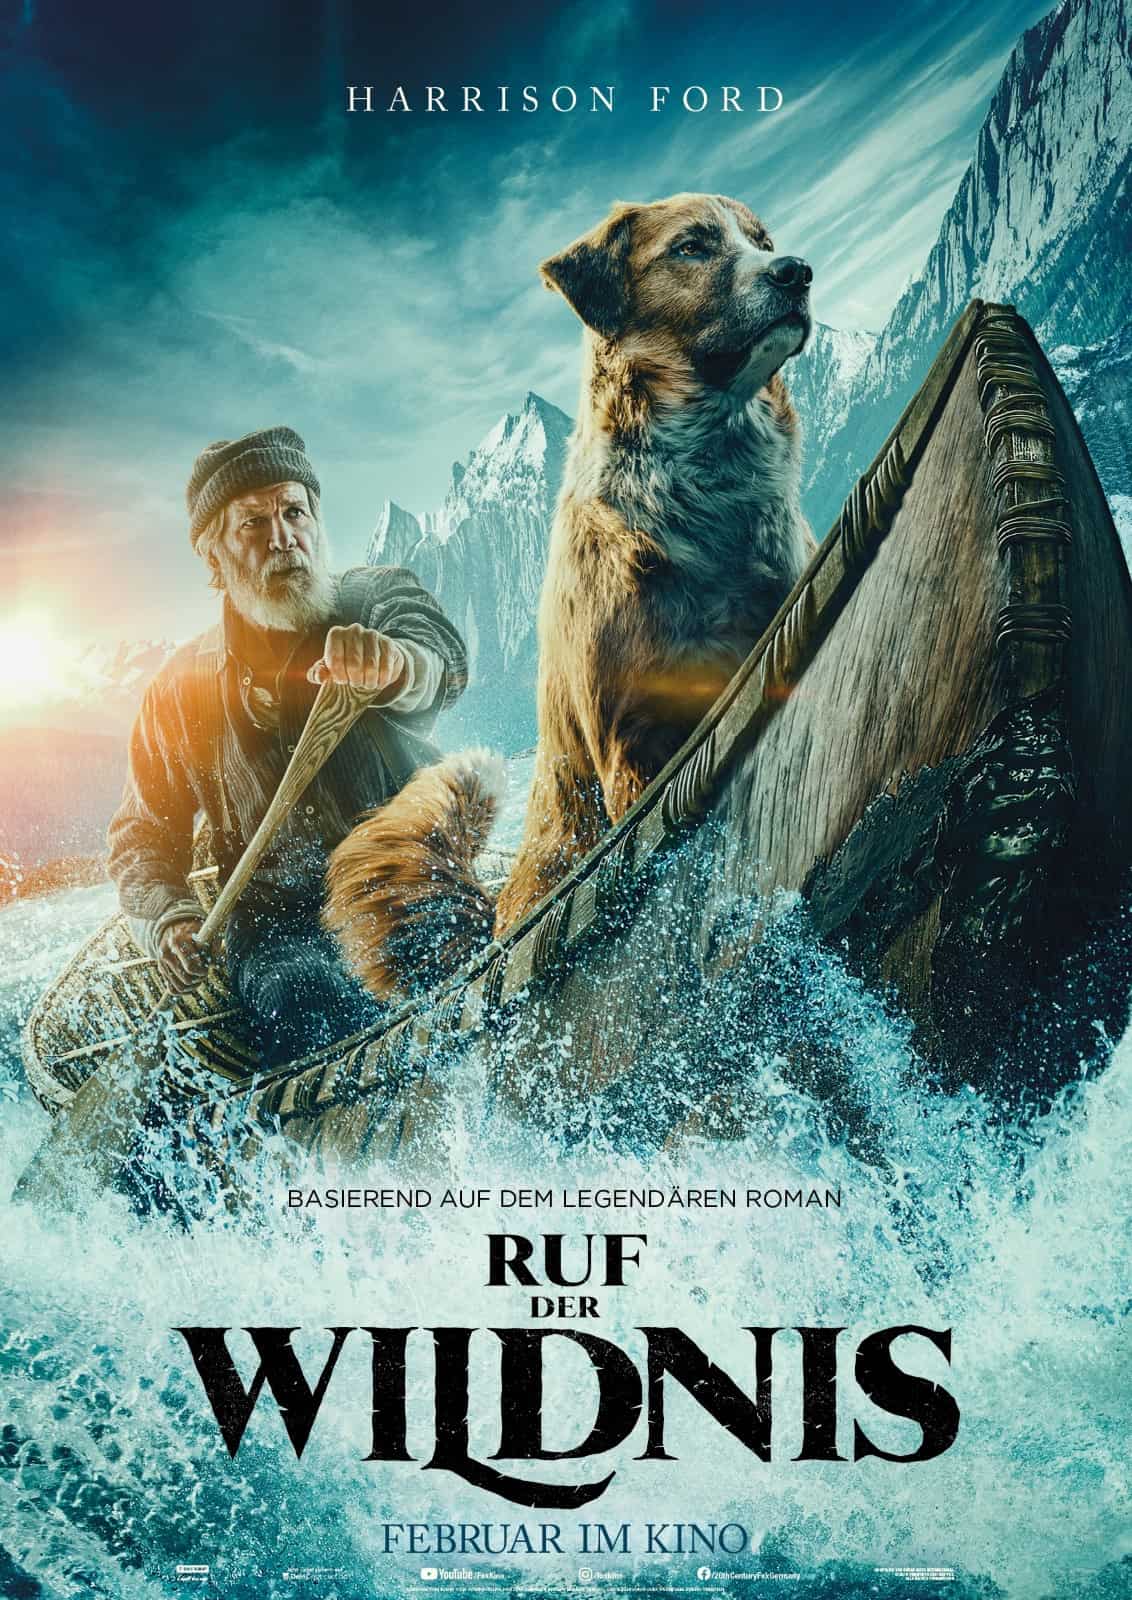 Ruf der Wildnis Poster mit Harrison Ford und Hund Buck.